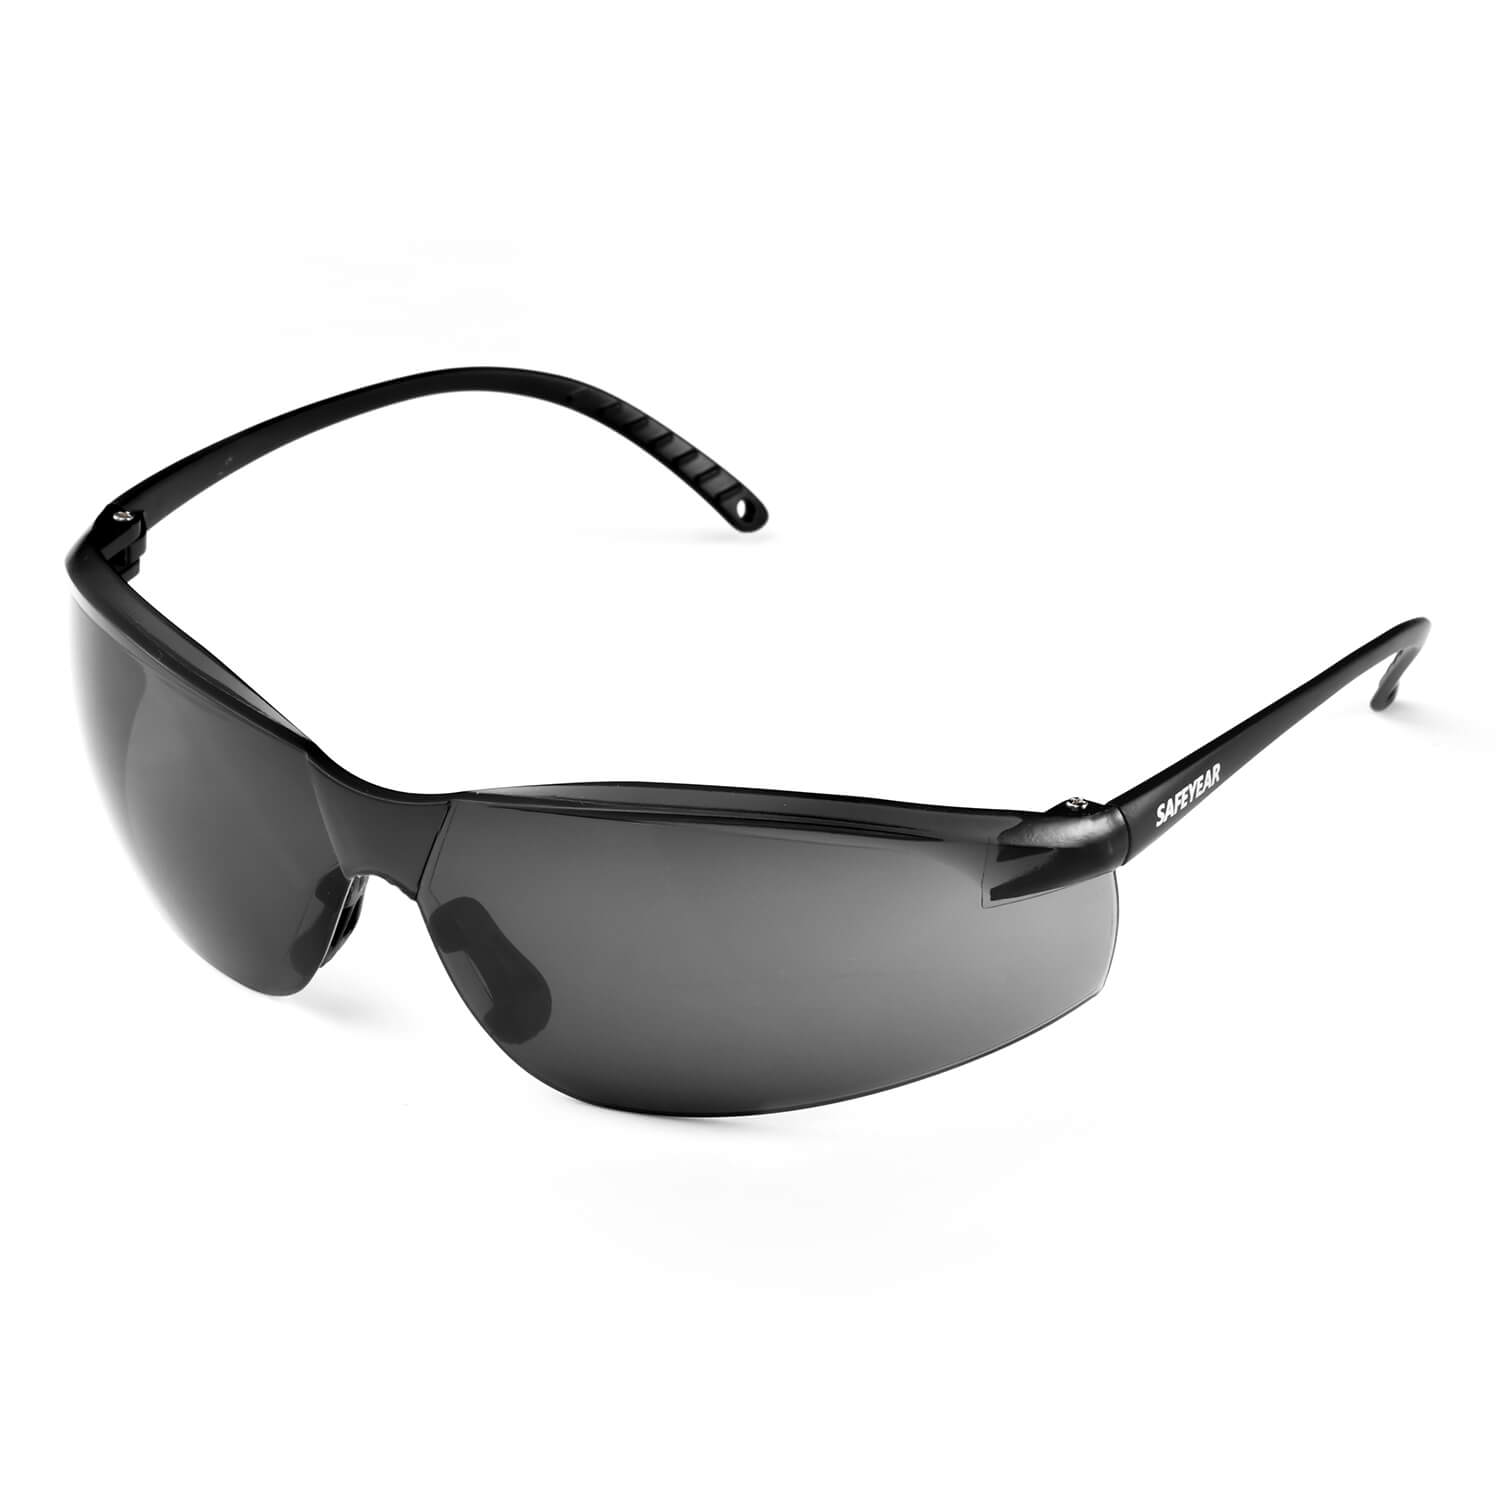 Safeyear Black Tinted Dark Lenses Safety Glasses for Men & Women